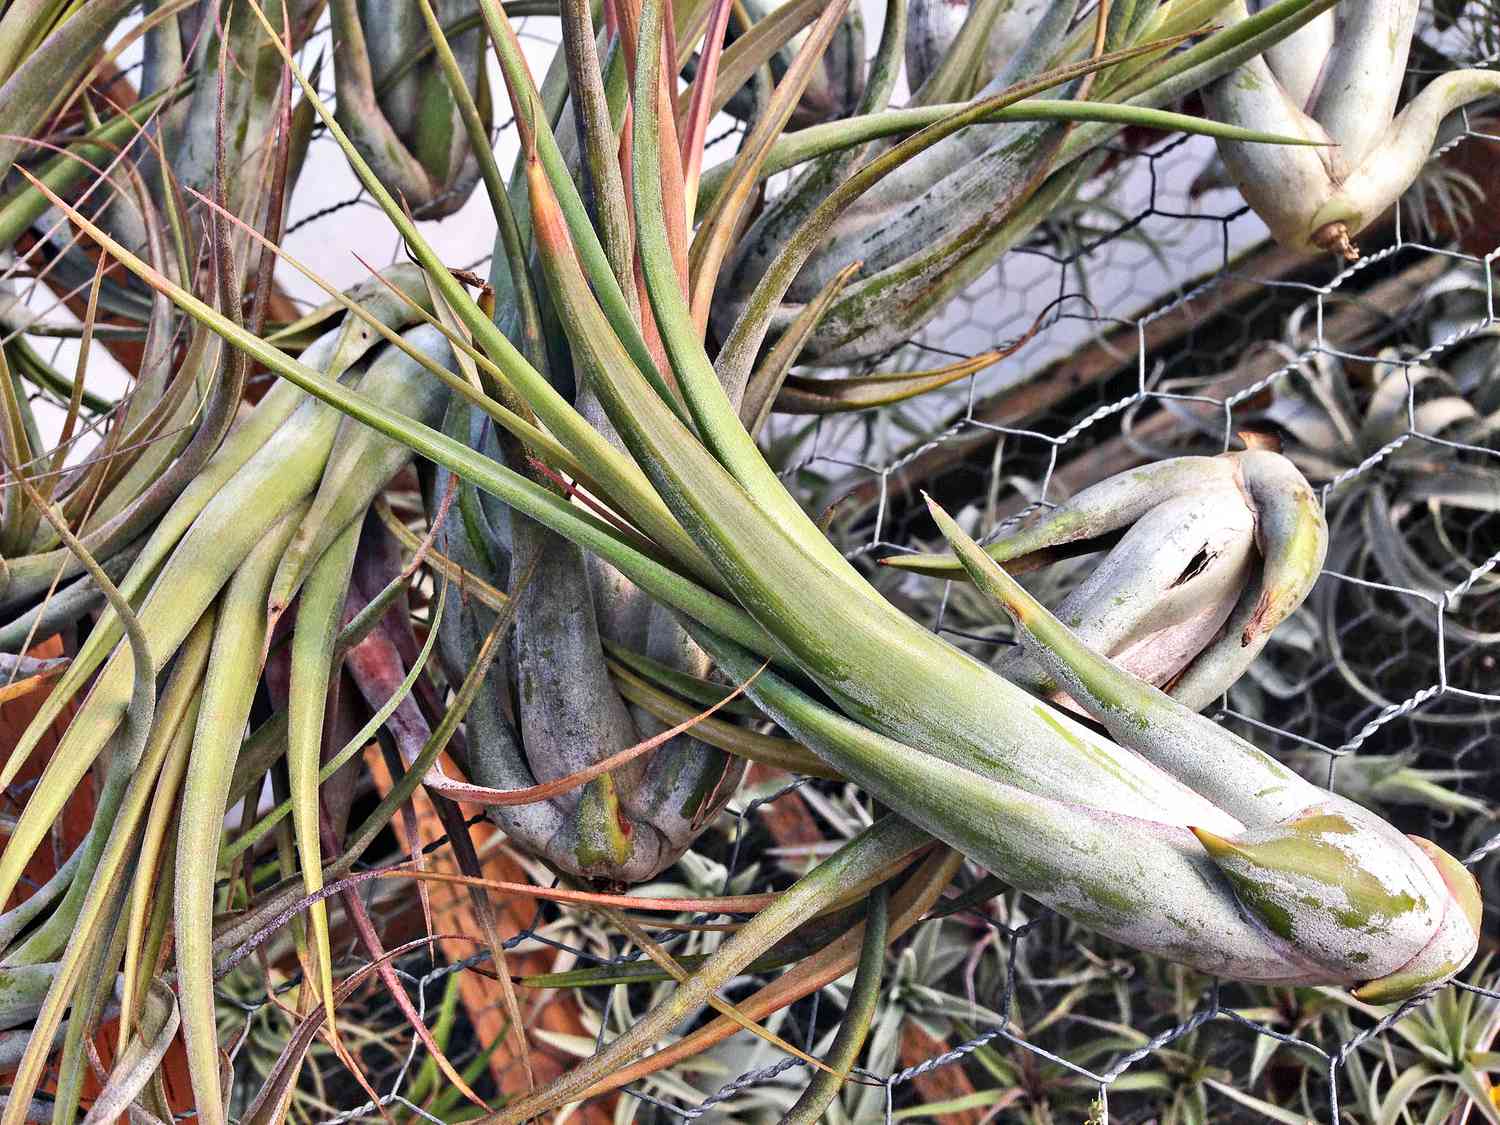 Circinata Luftpflanze mit weißlichen Knollen und grünen Blättern